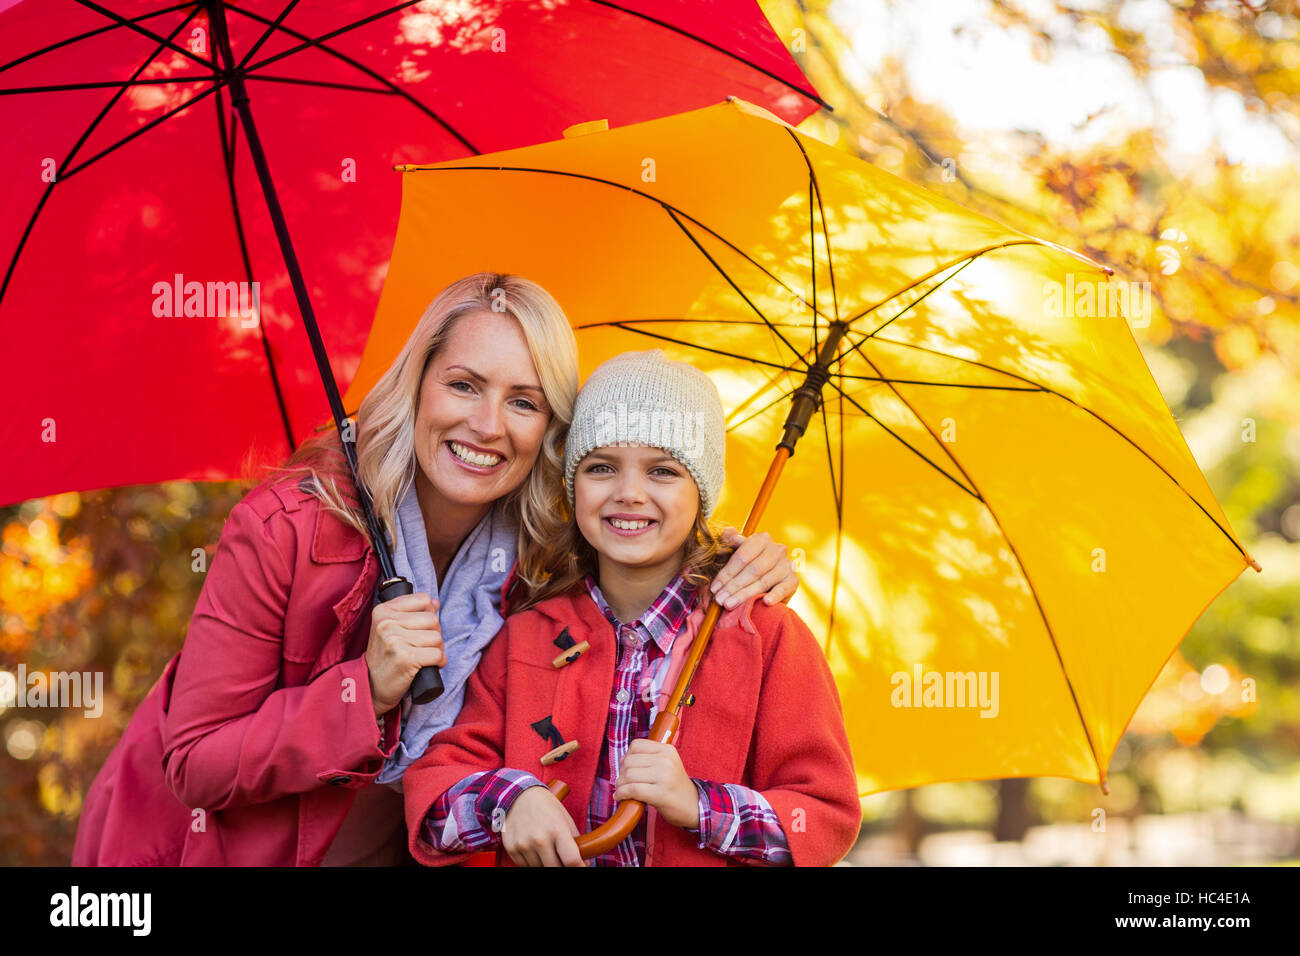 Ragazza con ombrello con la madre in posizione di parcheggio Foto Stock